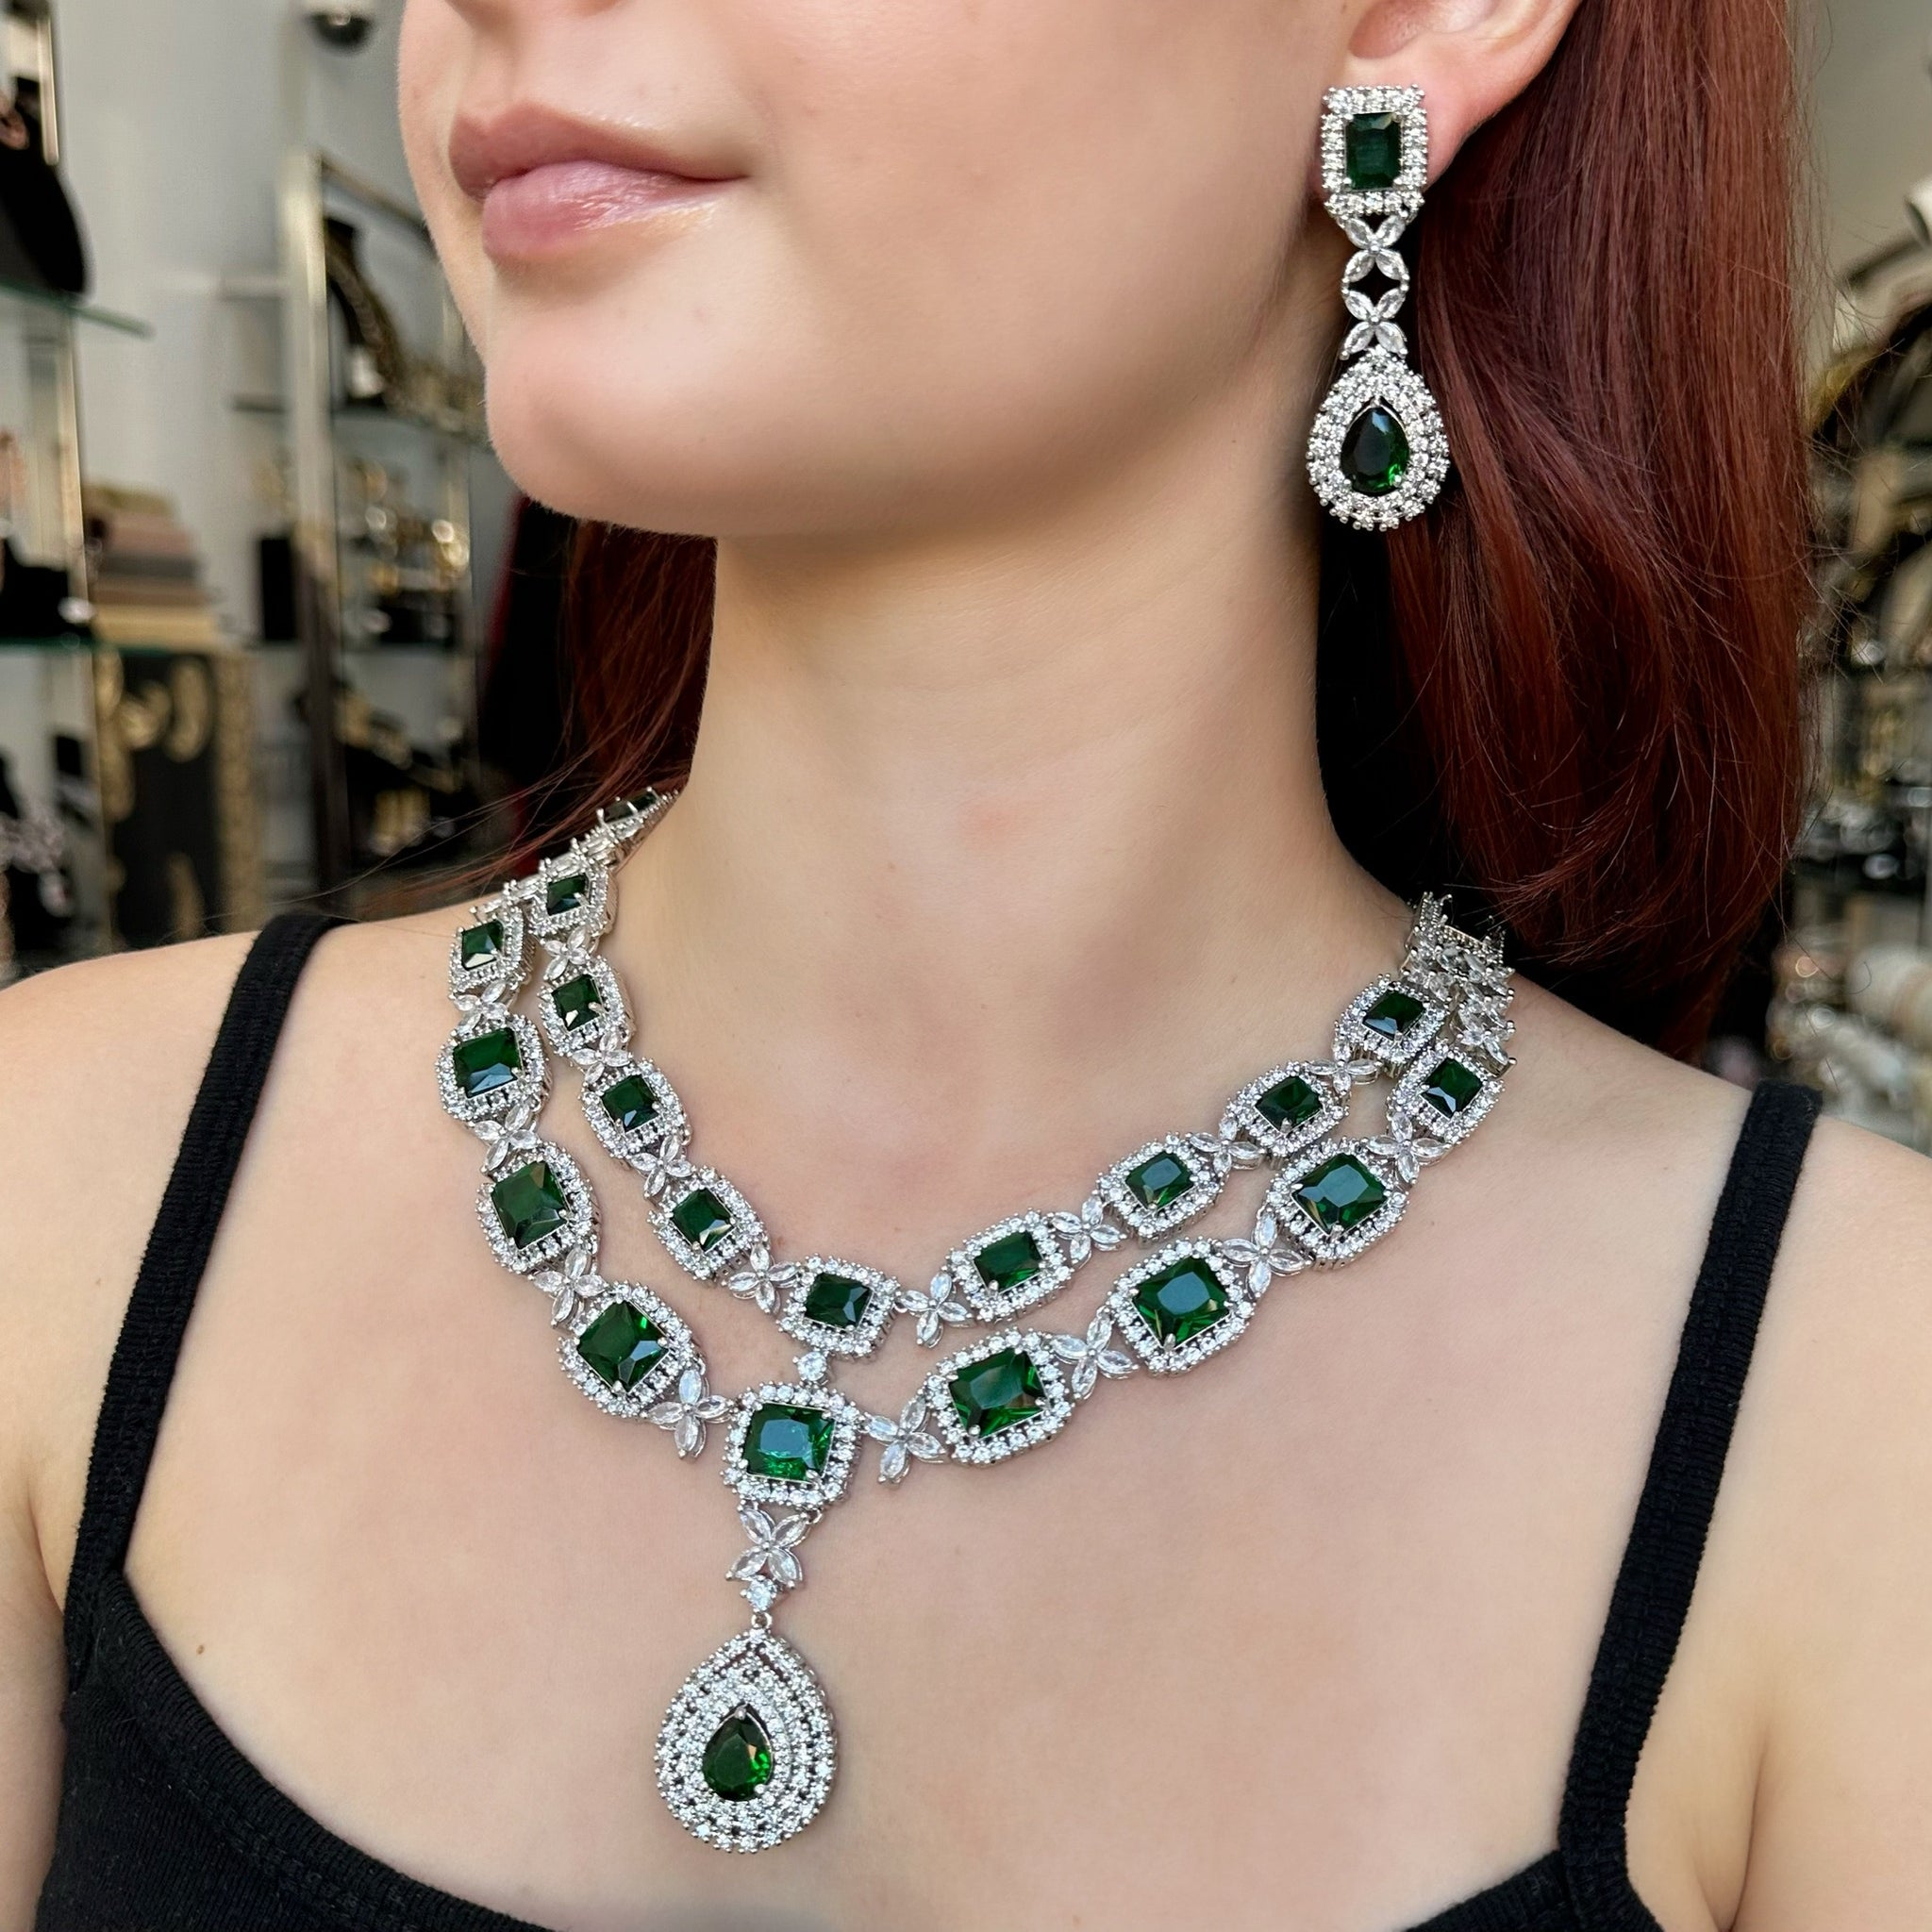 Emerald Princess Teardrop Pendant Necklace and Earrings Set